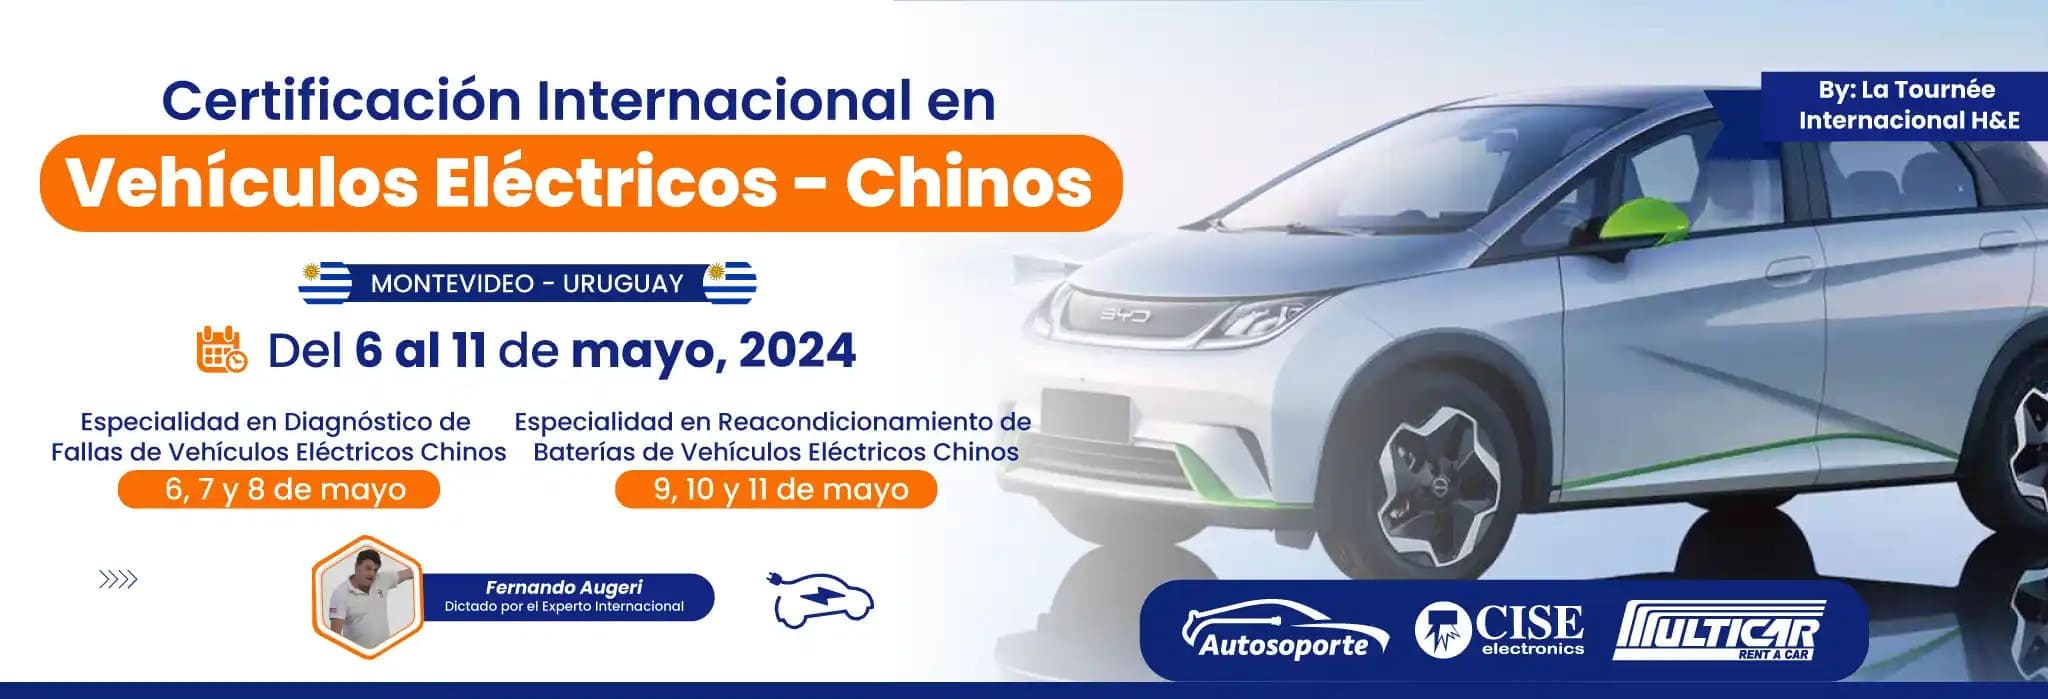 01-Curso_Uruguay_Vehiculos_electricos_chinos-horizontal_comprimida1_1